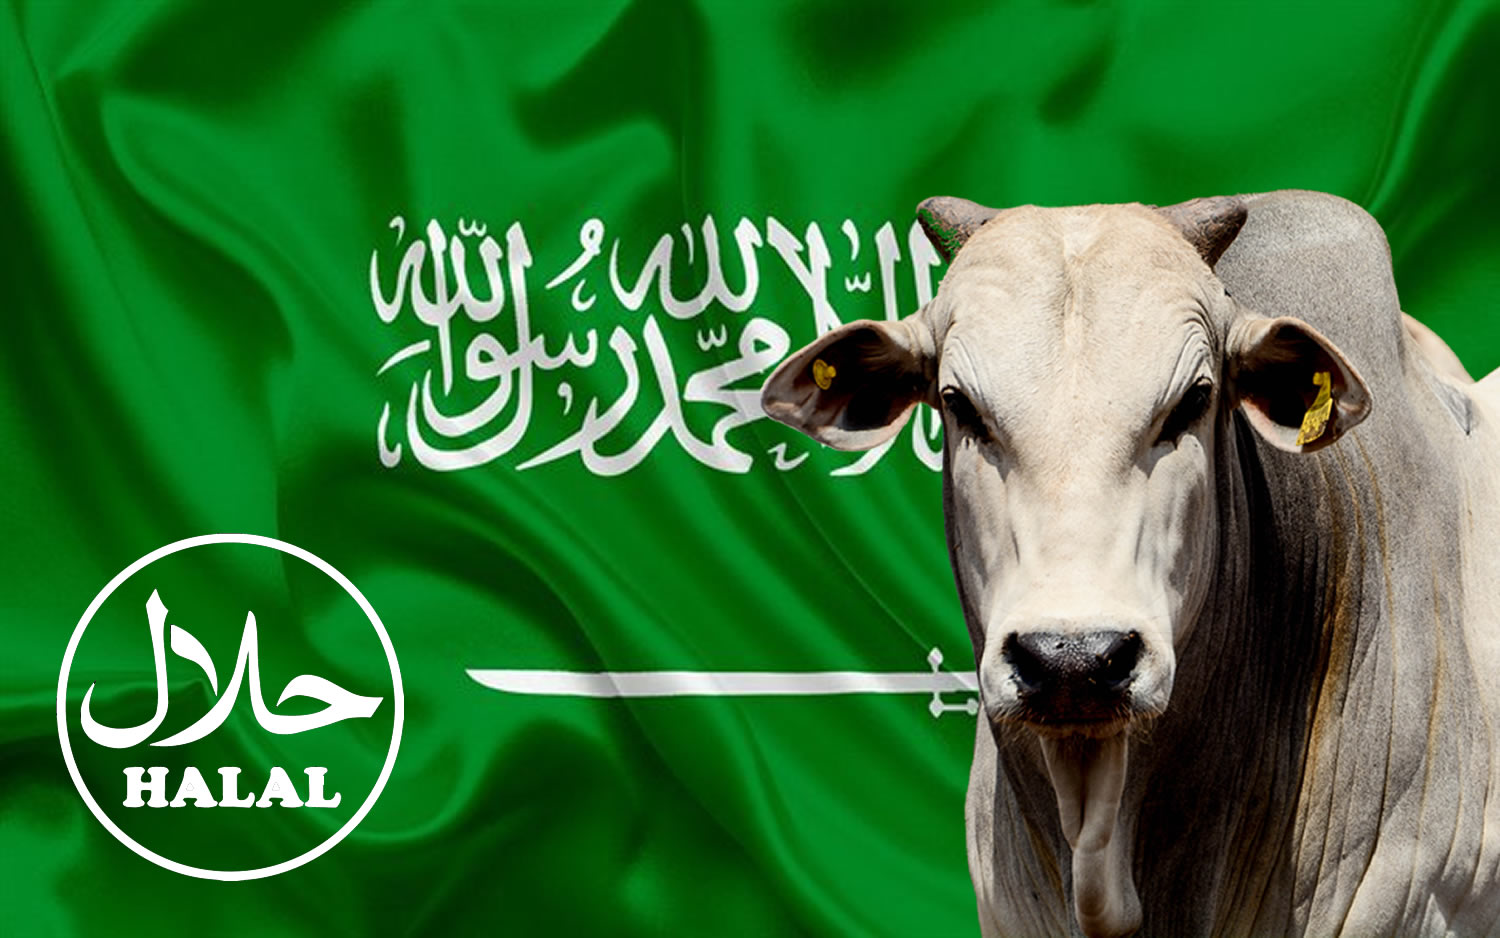 Árabes procuram fornecedores de carne no Brasil - Compre Rural